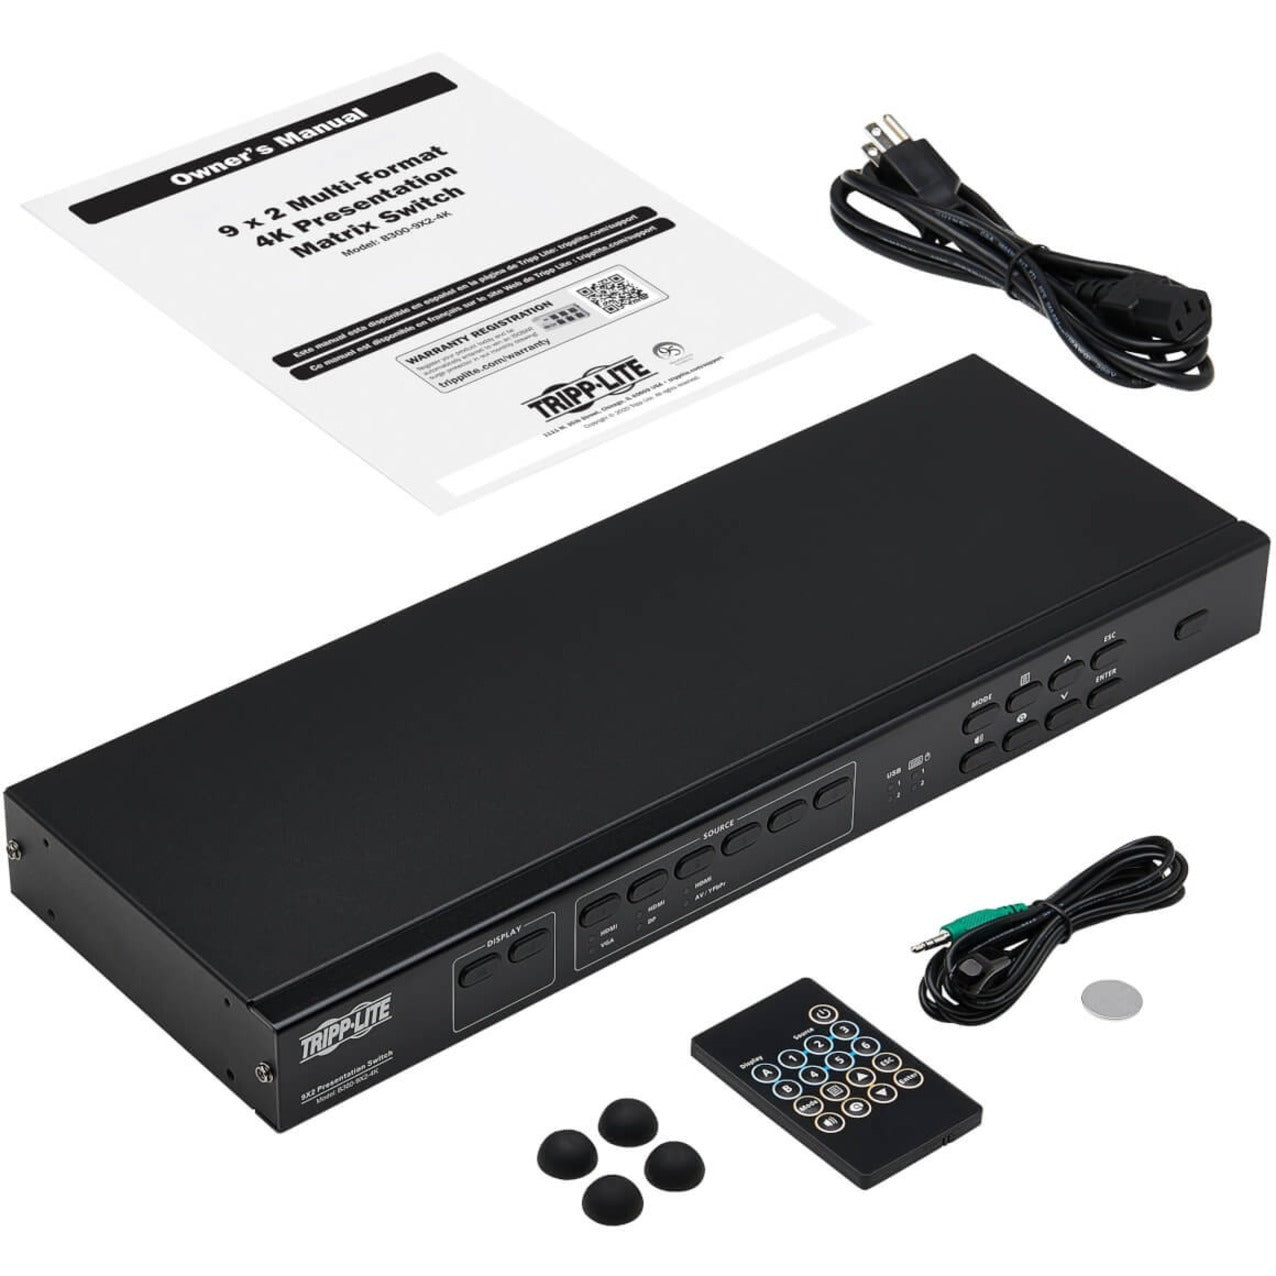 Tripp Lite B300-9X2-4K Multi-Format Matrix Switch/Splitter, 4K, 2 Year Warranty, TAA Compliant, VGA/HDMI/DisplayPort, 6 USB Ports